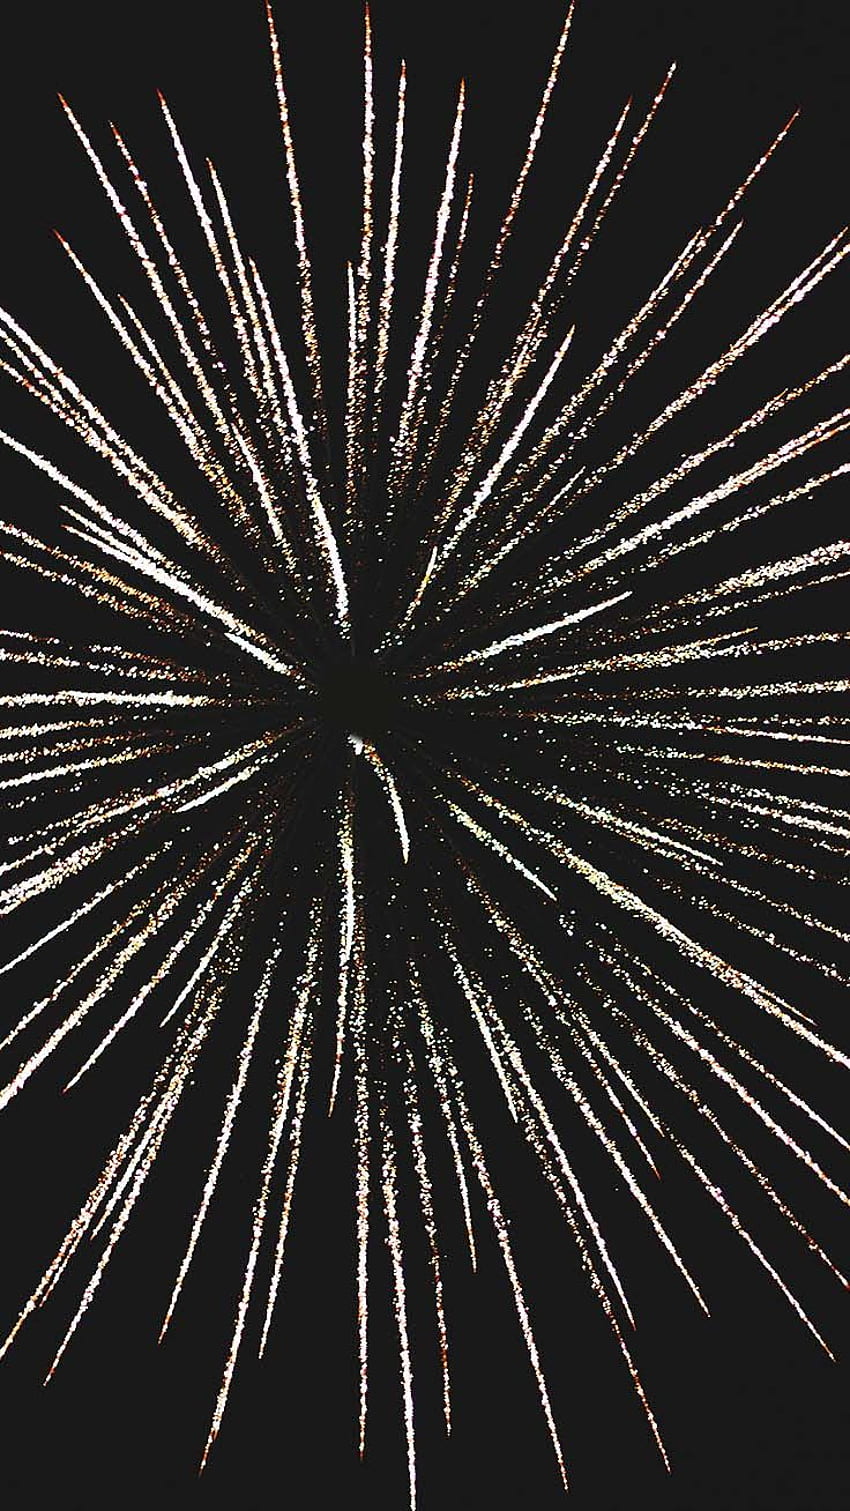 Pháo hoa (Fireworks): Bạn đã bao giờ đắm mình trong màn trình diễn pháo hoa rực rỡ, lung linh chưa? Hãy thưởng thức bức tranh về pháo hoa đầy màu sắc và sự hoành tráng của hạt nhân trên trời đêm để cảm nhận niềm vui rộn ràng của sự kiện này.